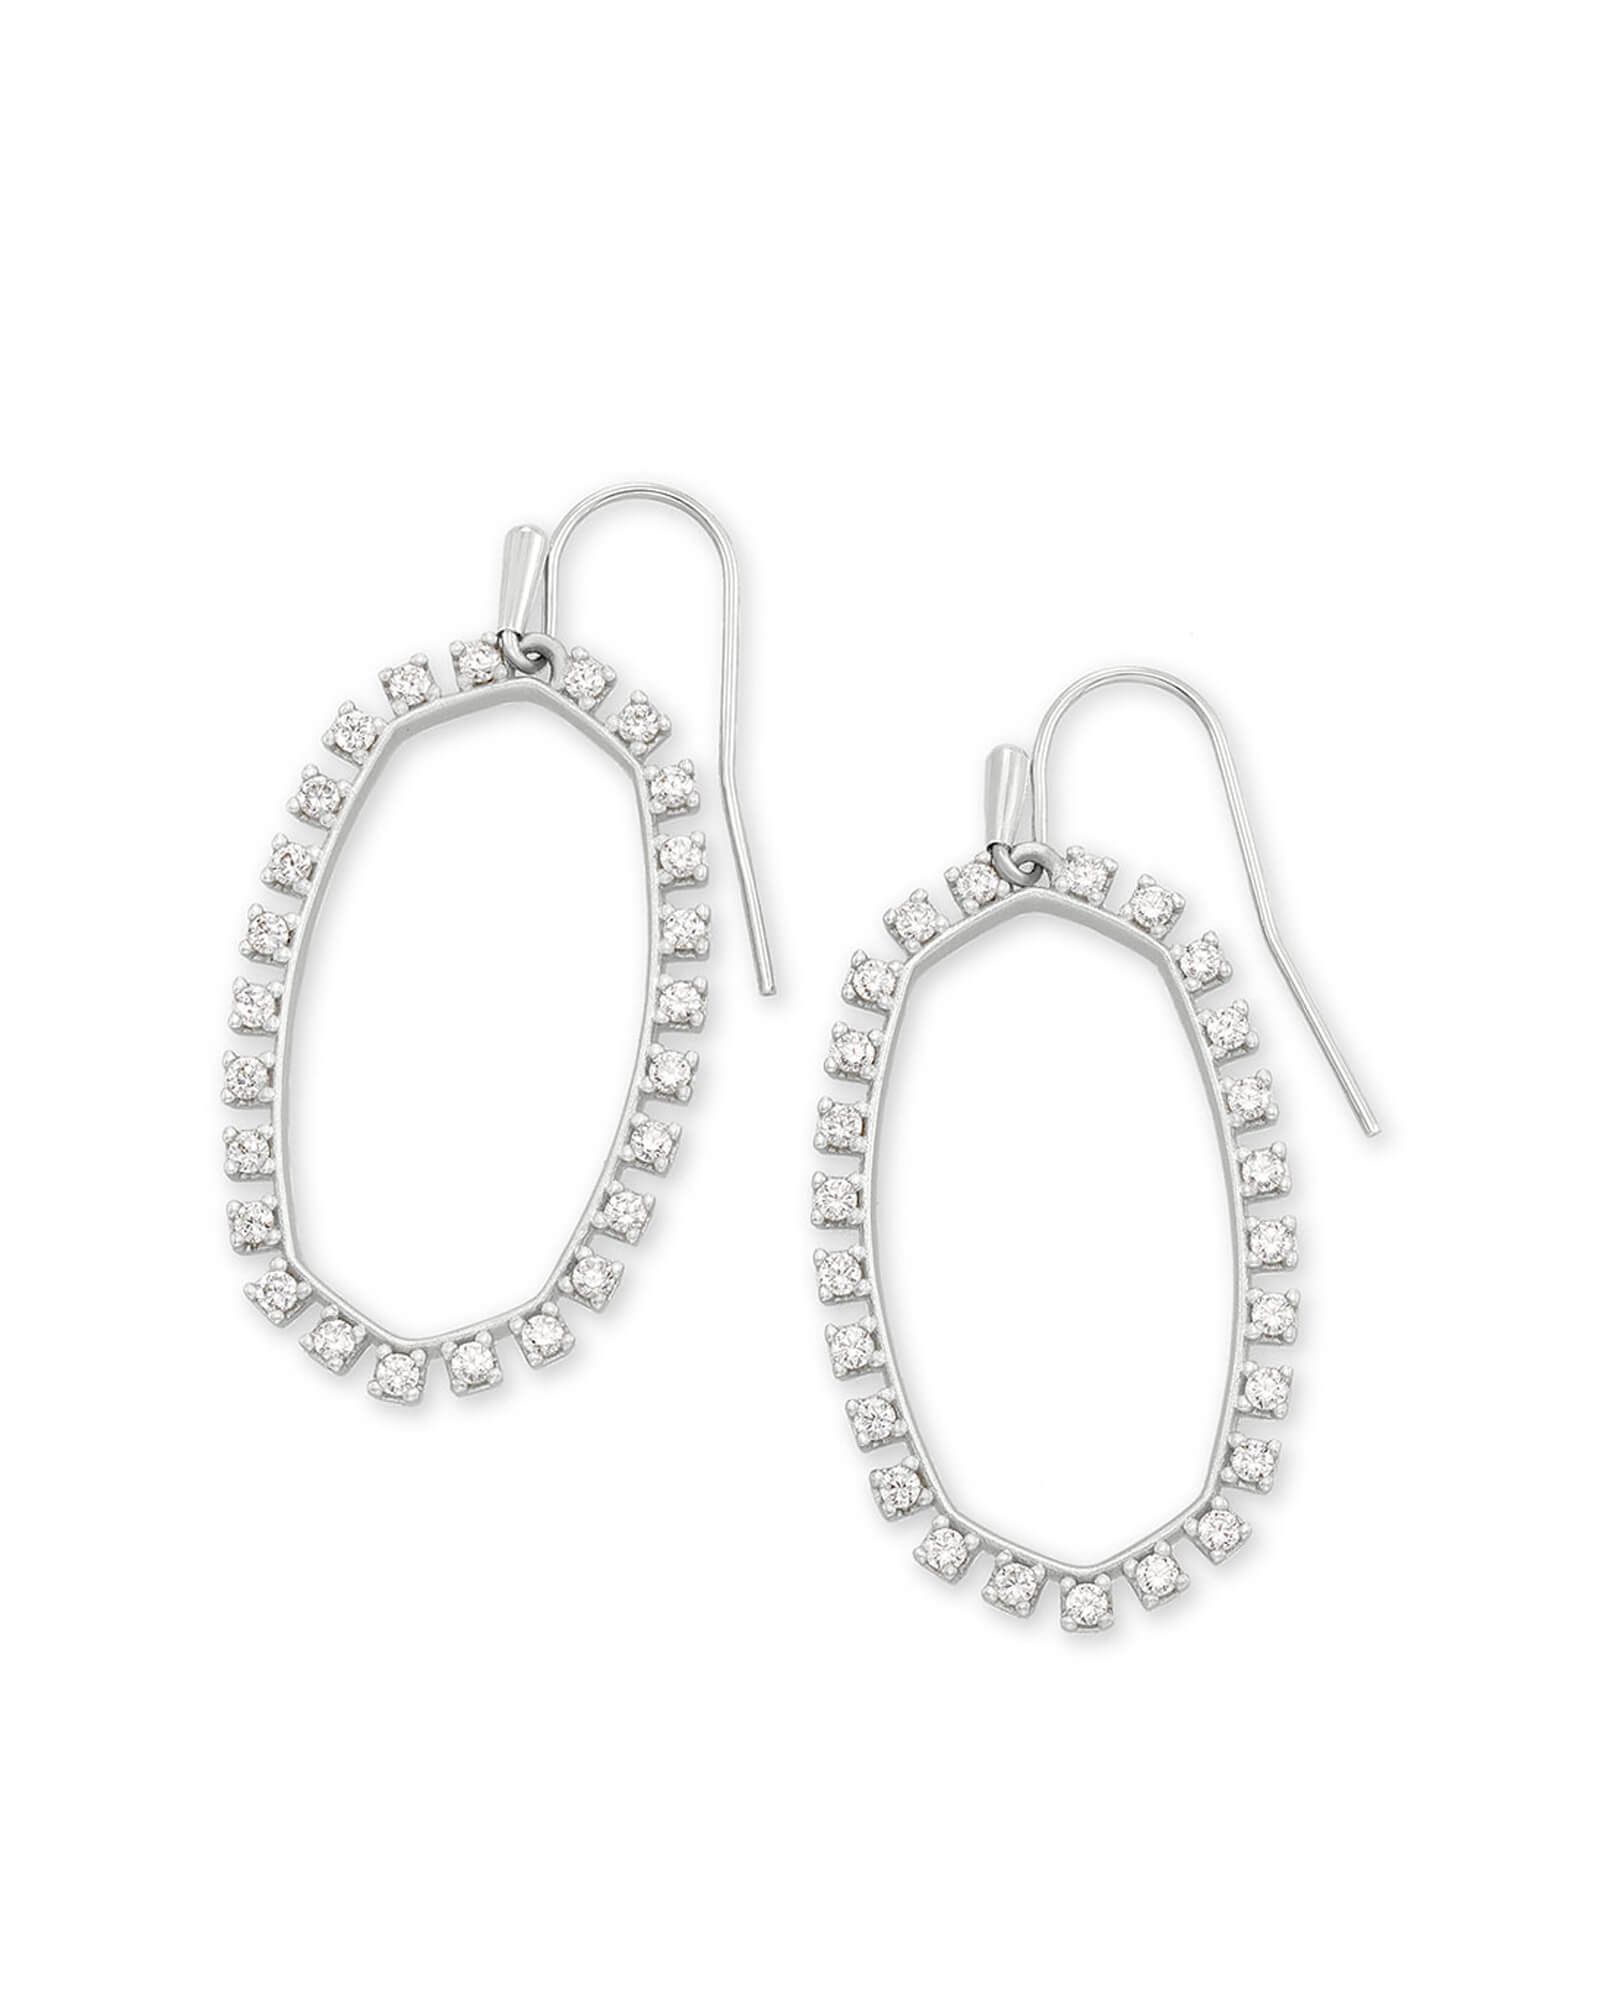 Elle Open Frame Crystal Drop Earrings in Silver | Kendra Scott